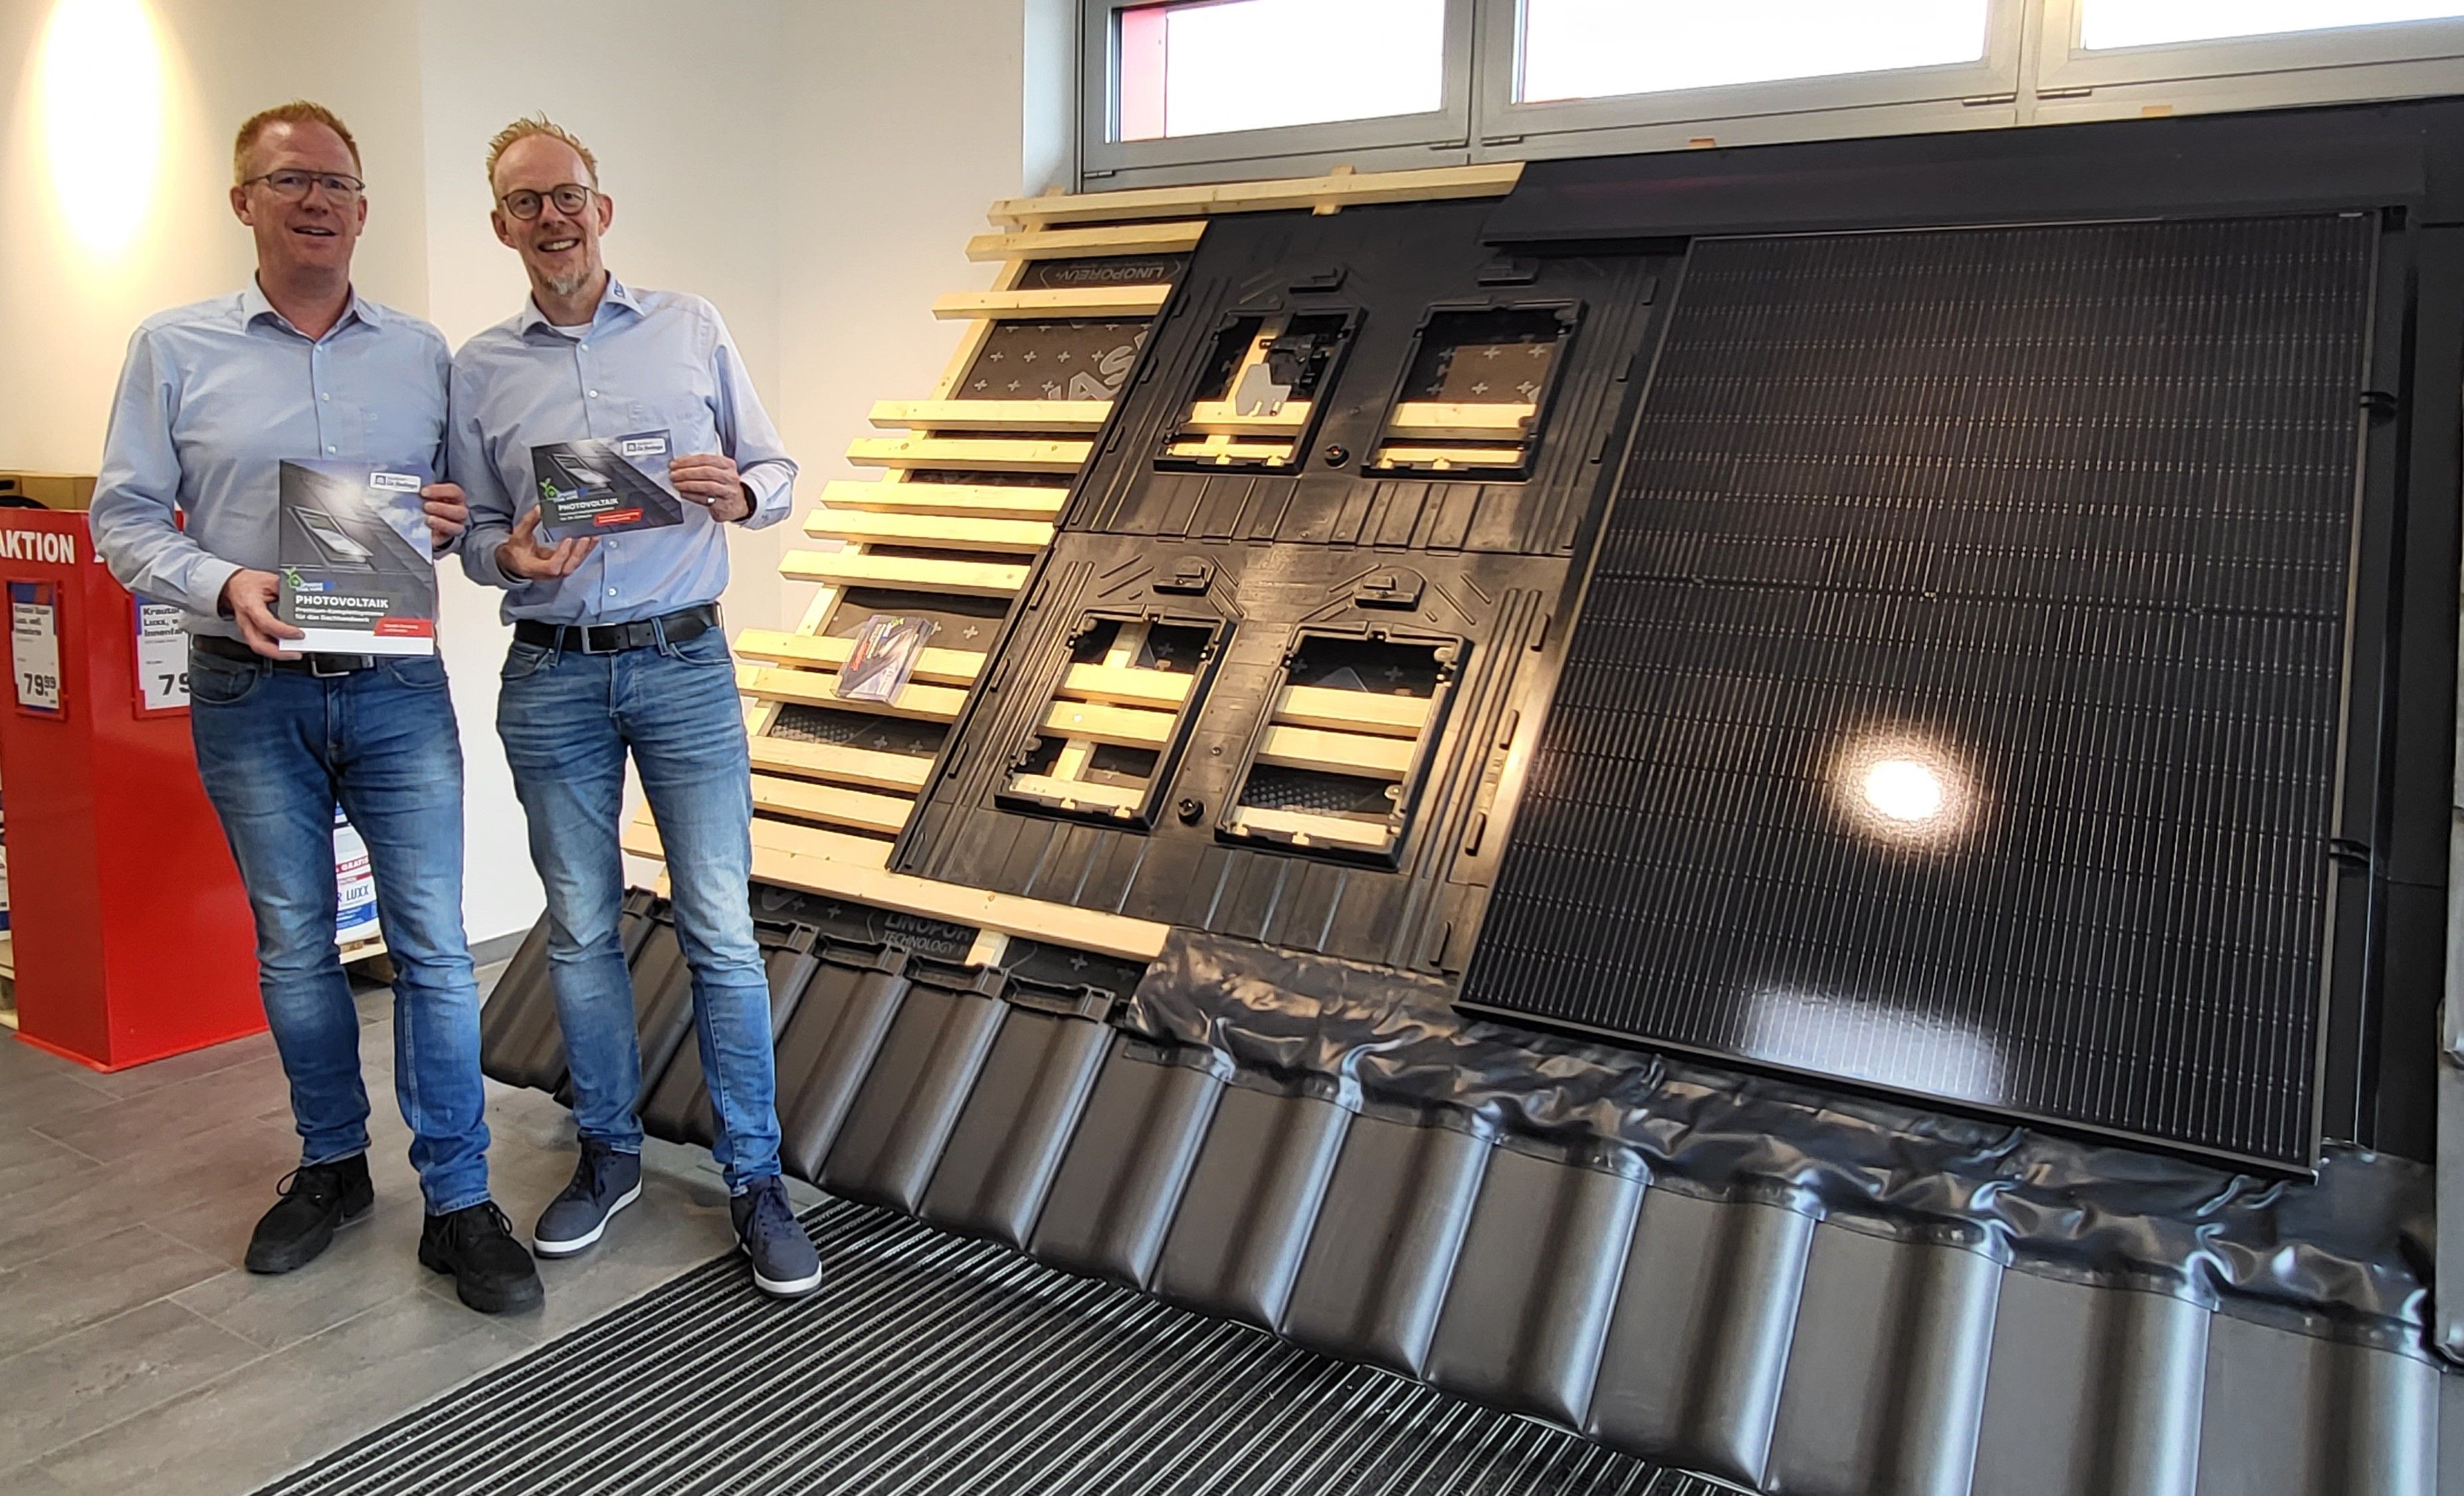 In der Form einzigartig im OM. Heiner (r.) und Peter gr. Beilage präsentieren ein umfassendes Angebotspaket rund um das Thema Photovoltaik. Foto: gr. Beilage